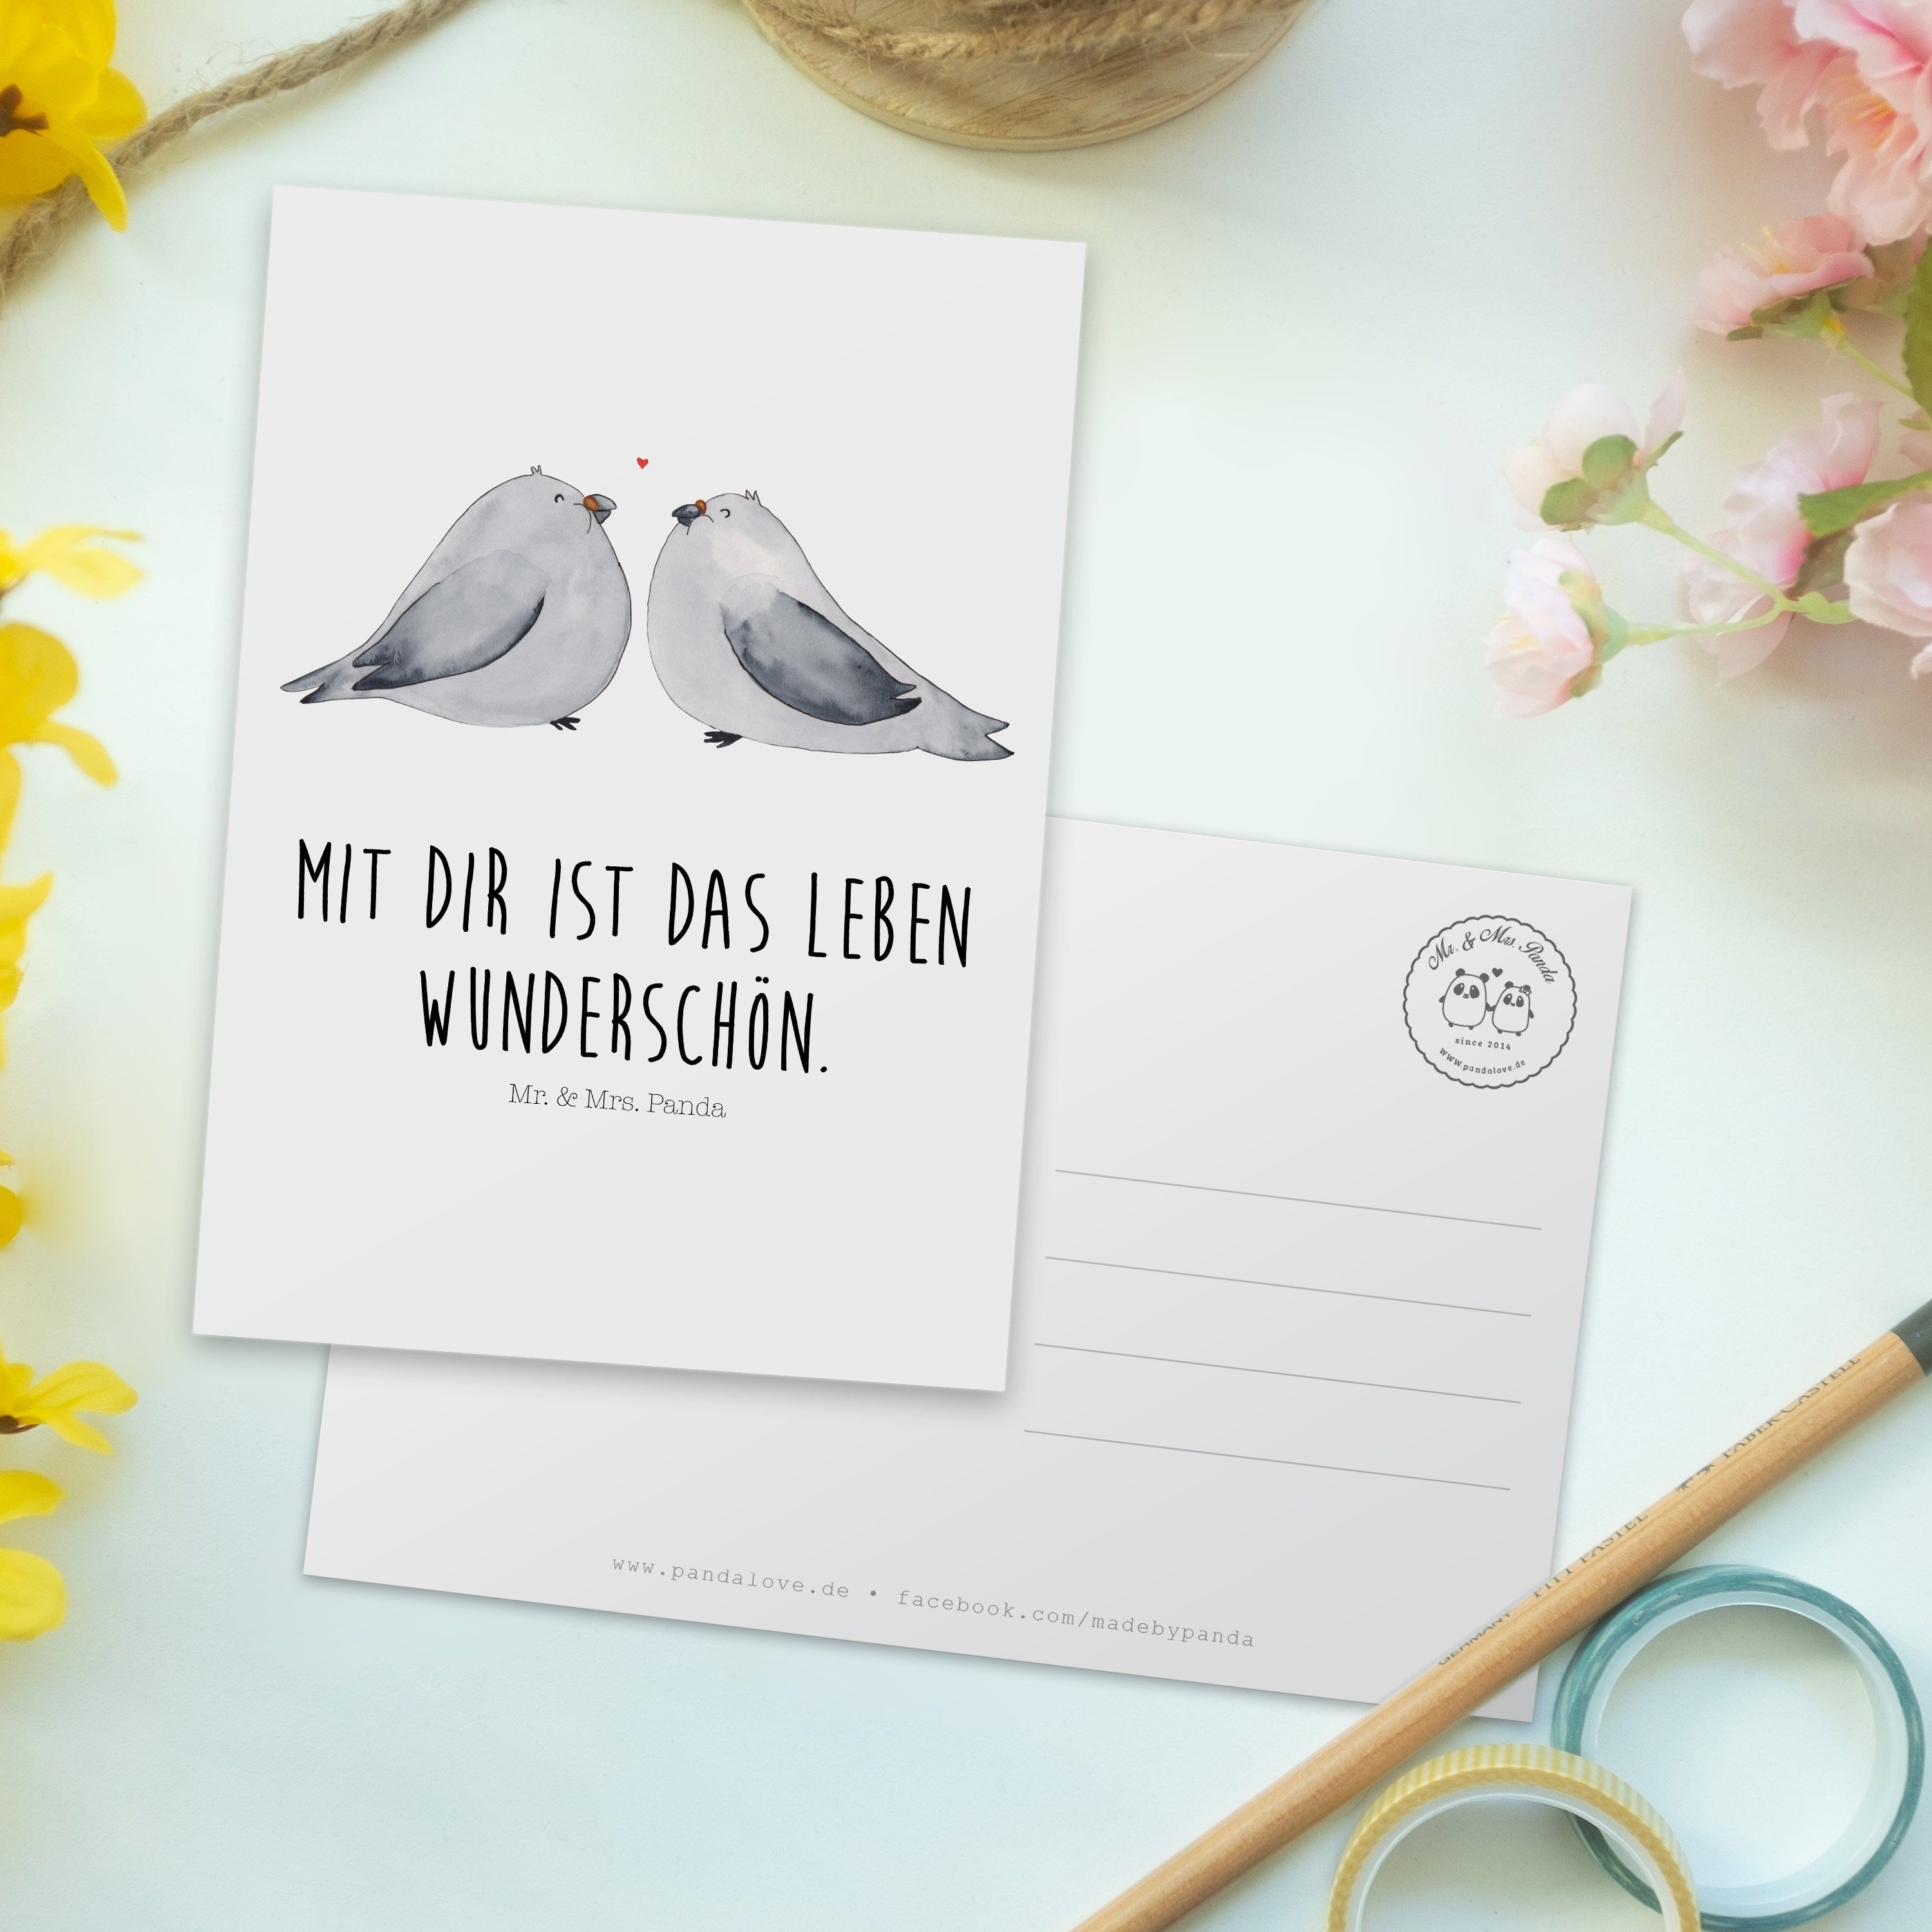 Mr. Panda & Mrs. - Geschenk, Liebe - Turteltauben Postkarte zweit, zu Weiß Geschenkkarte, Grußka